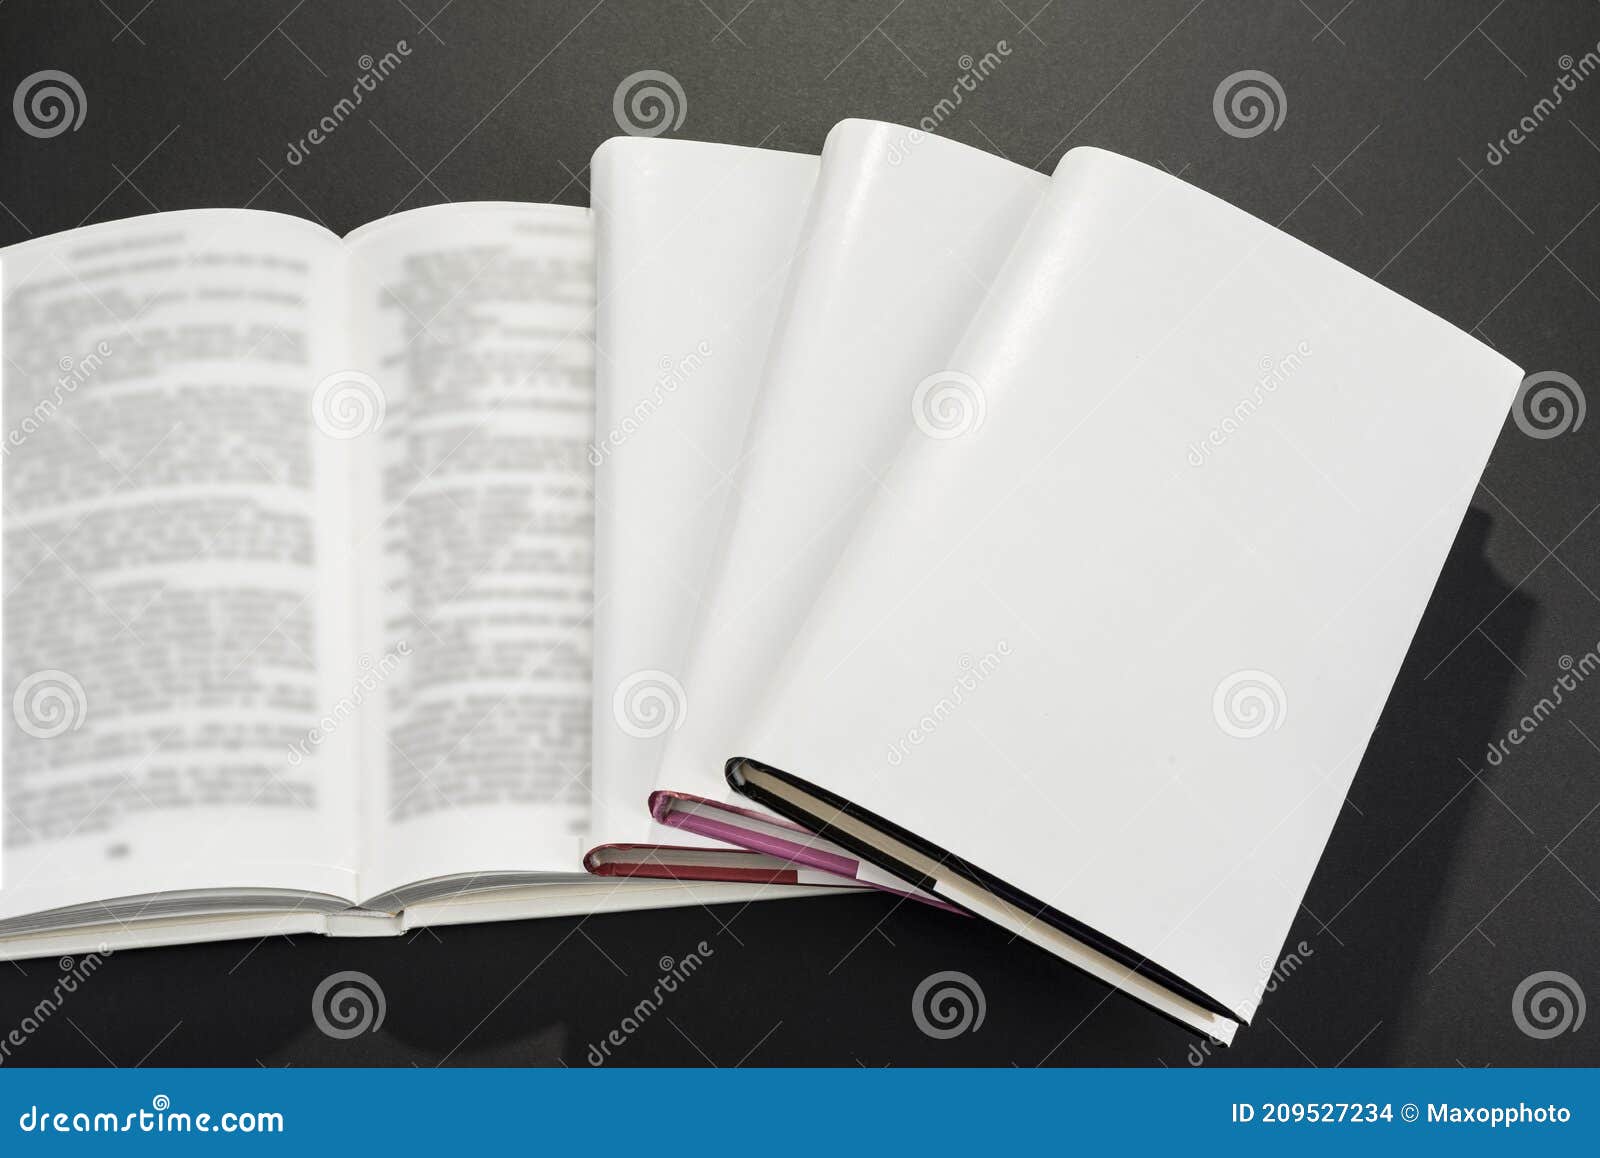 Portadas De Libros En Blanco Para Rellenar El Texto Foto de archivo -  Imagen de mofa, muestra: 209527234